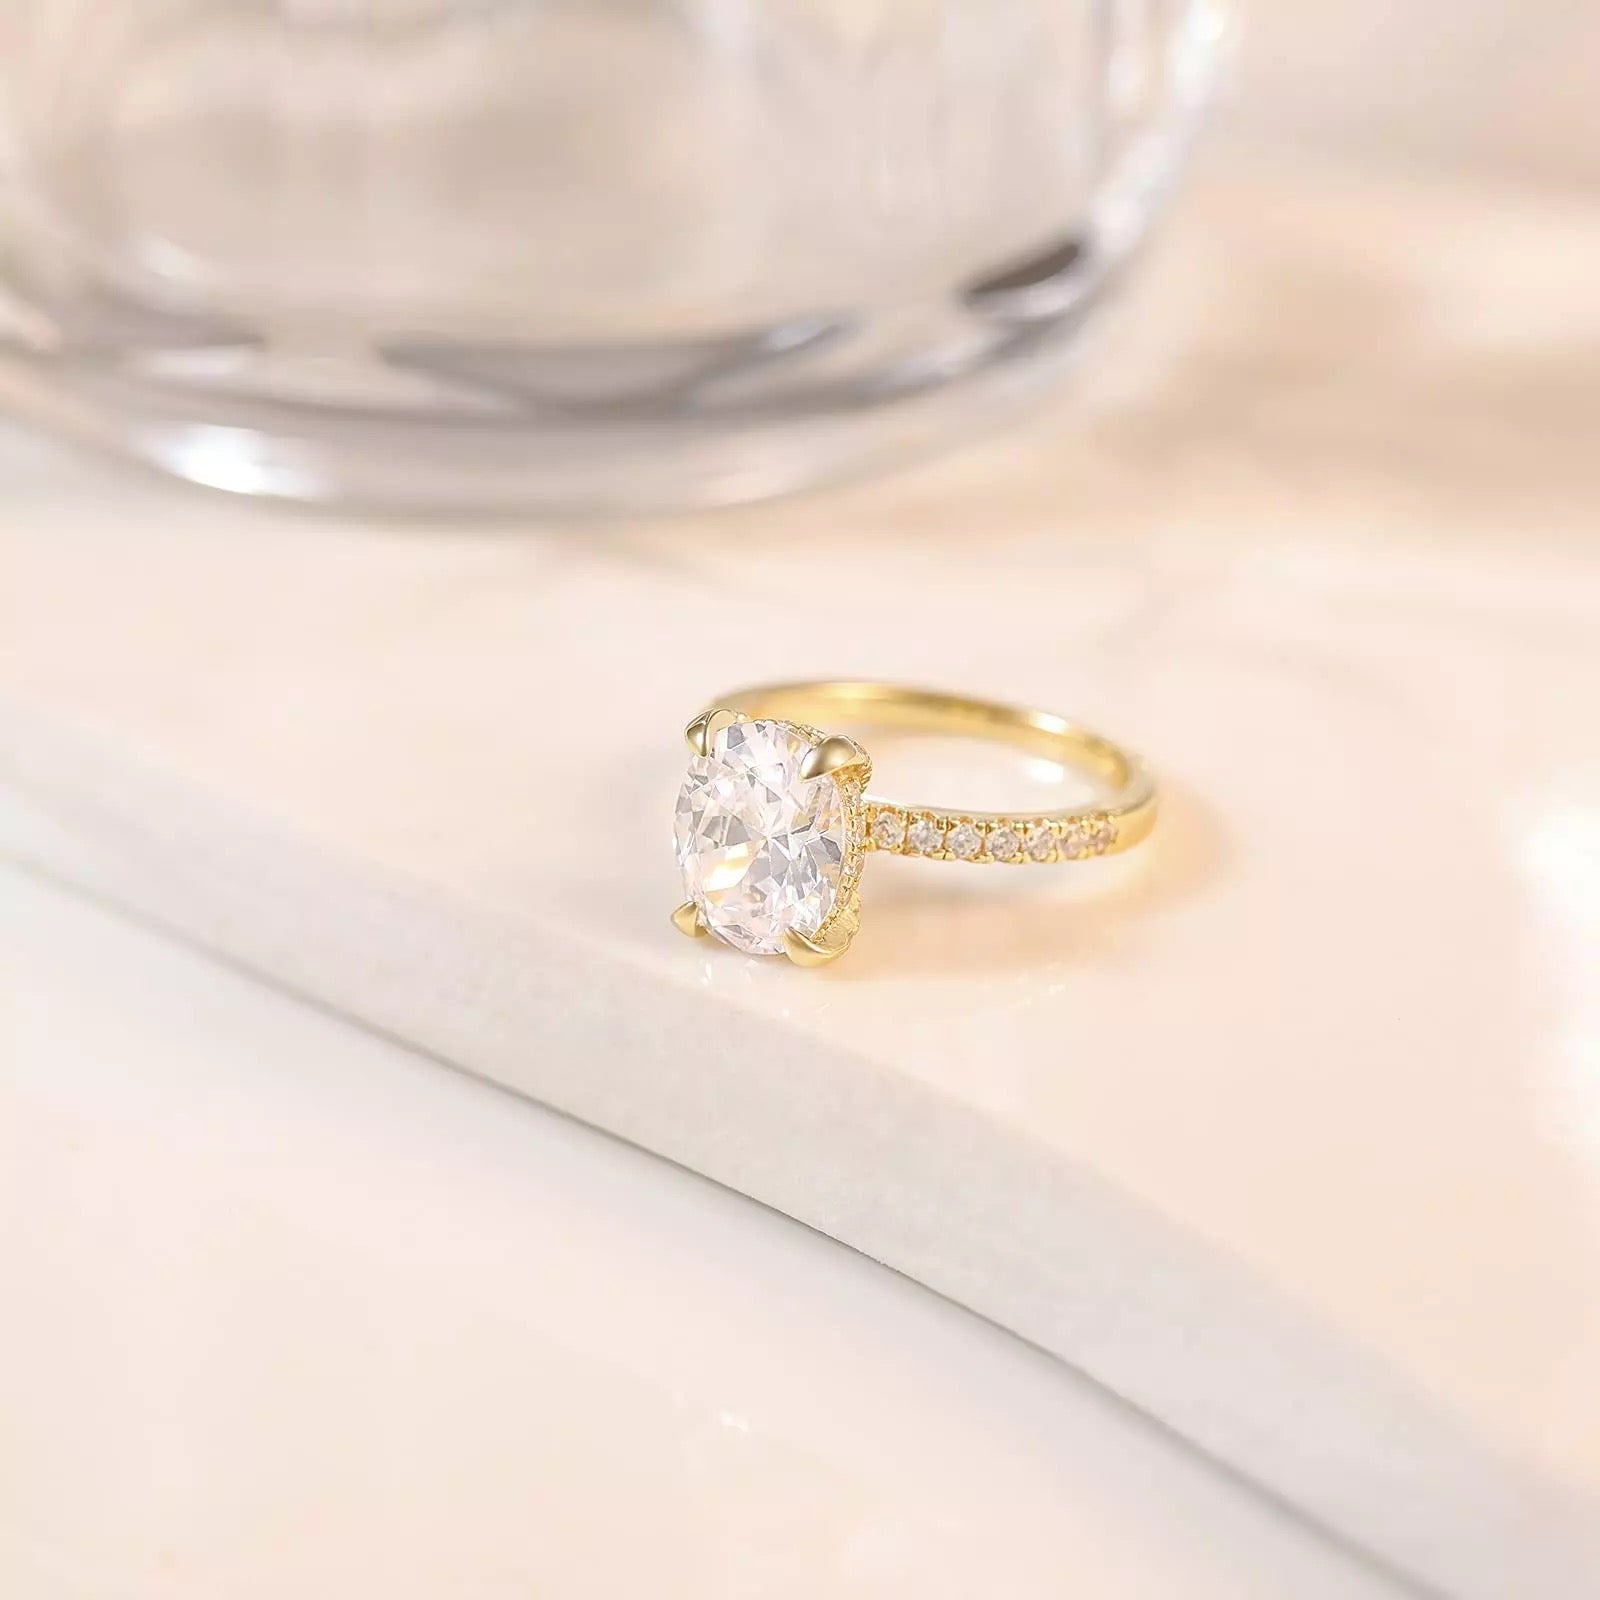 Gold ring, ring set, ring duo, stacking rings, wedding ring, engagement ring, statement ring, cocktail ring